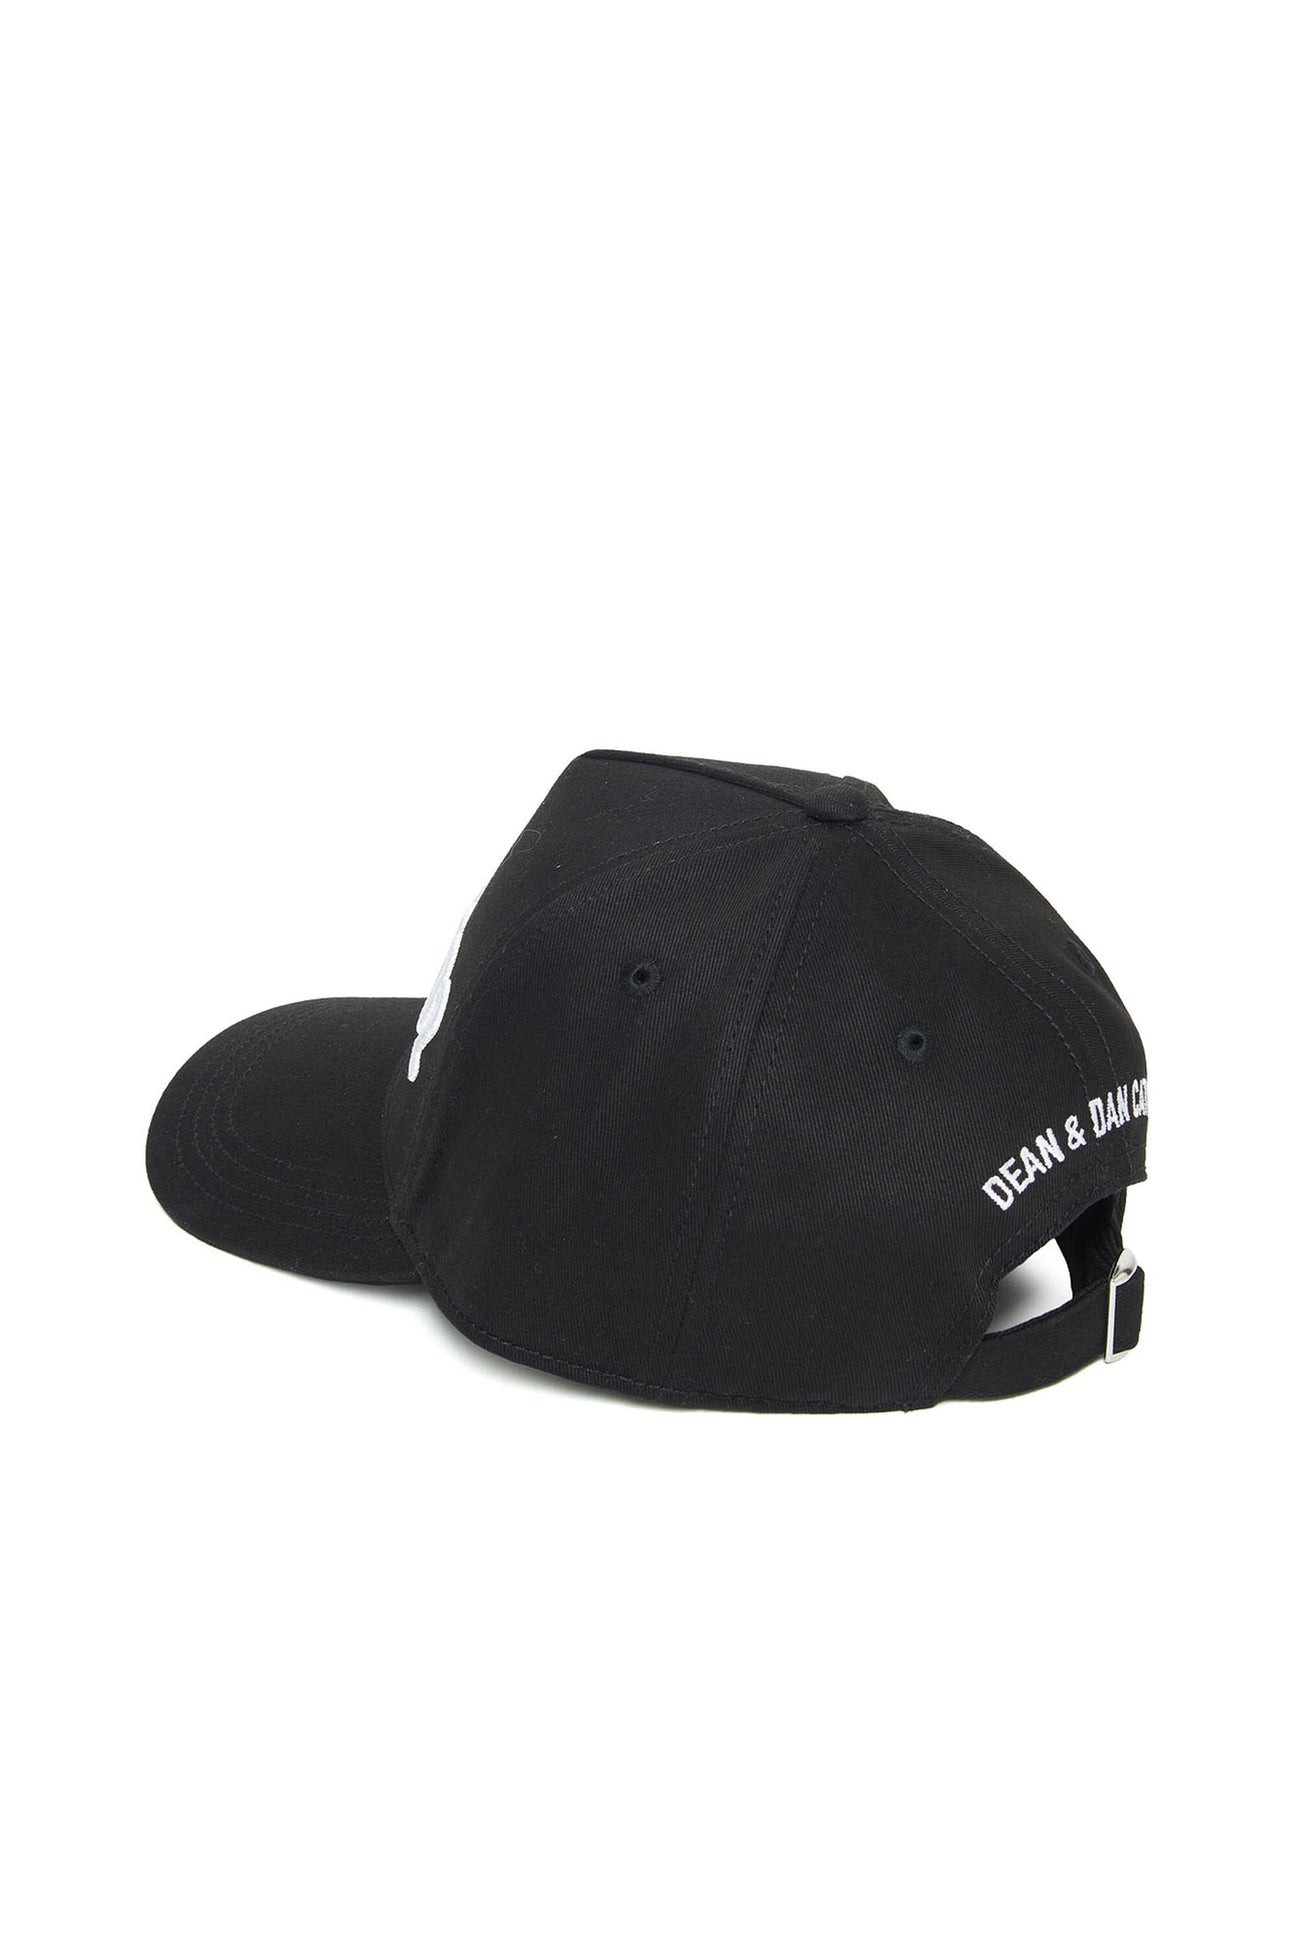 Black gabardine baseball cap with logo Black gabardine baseball cap with logo